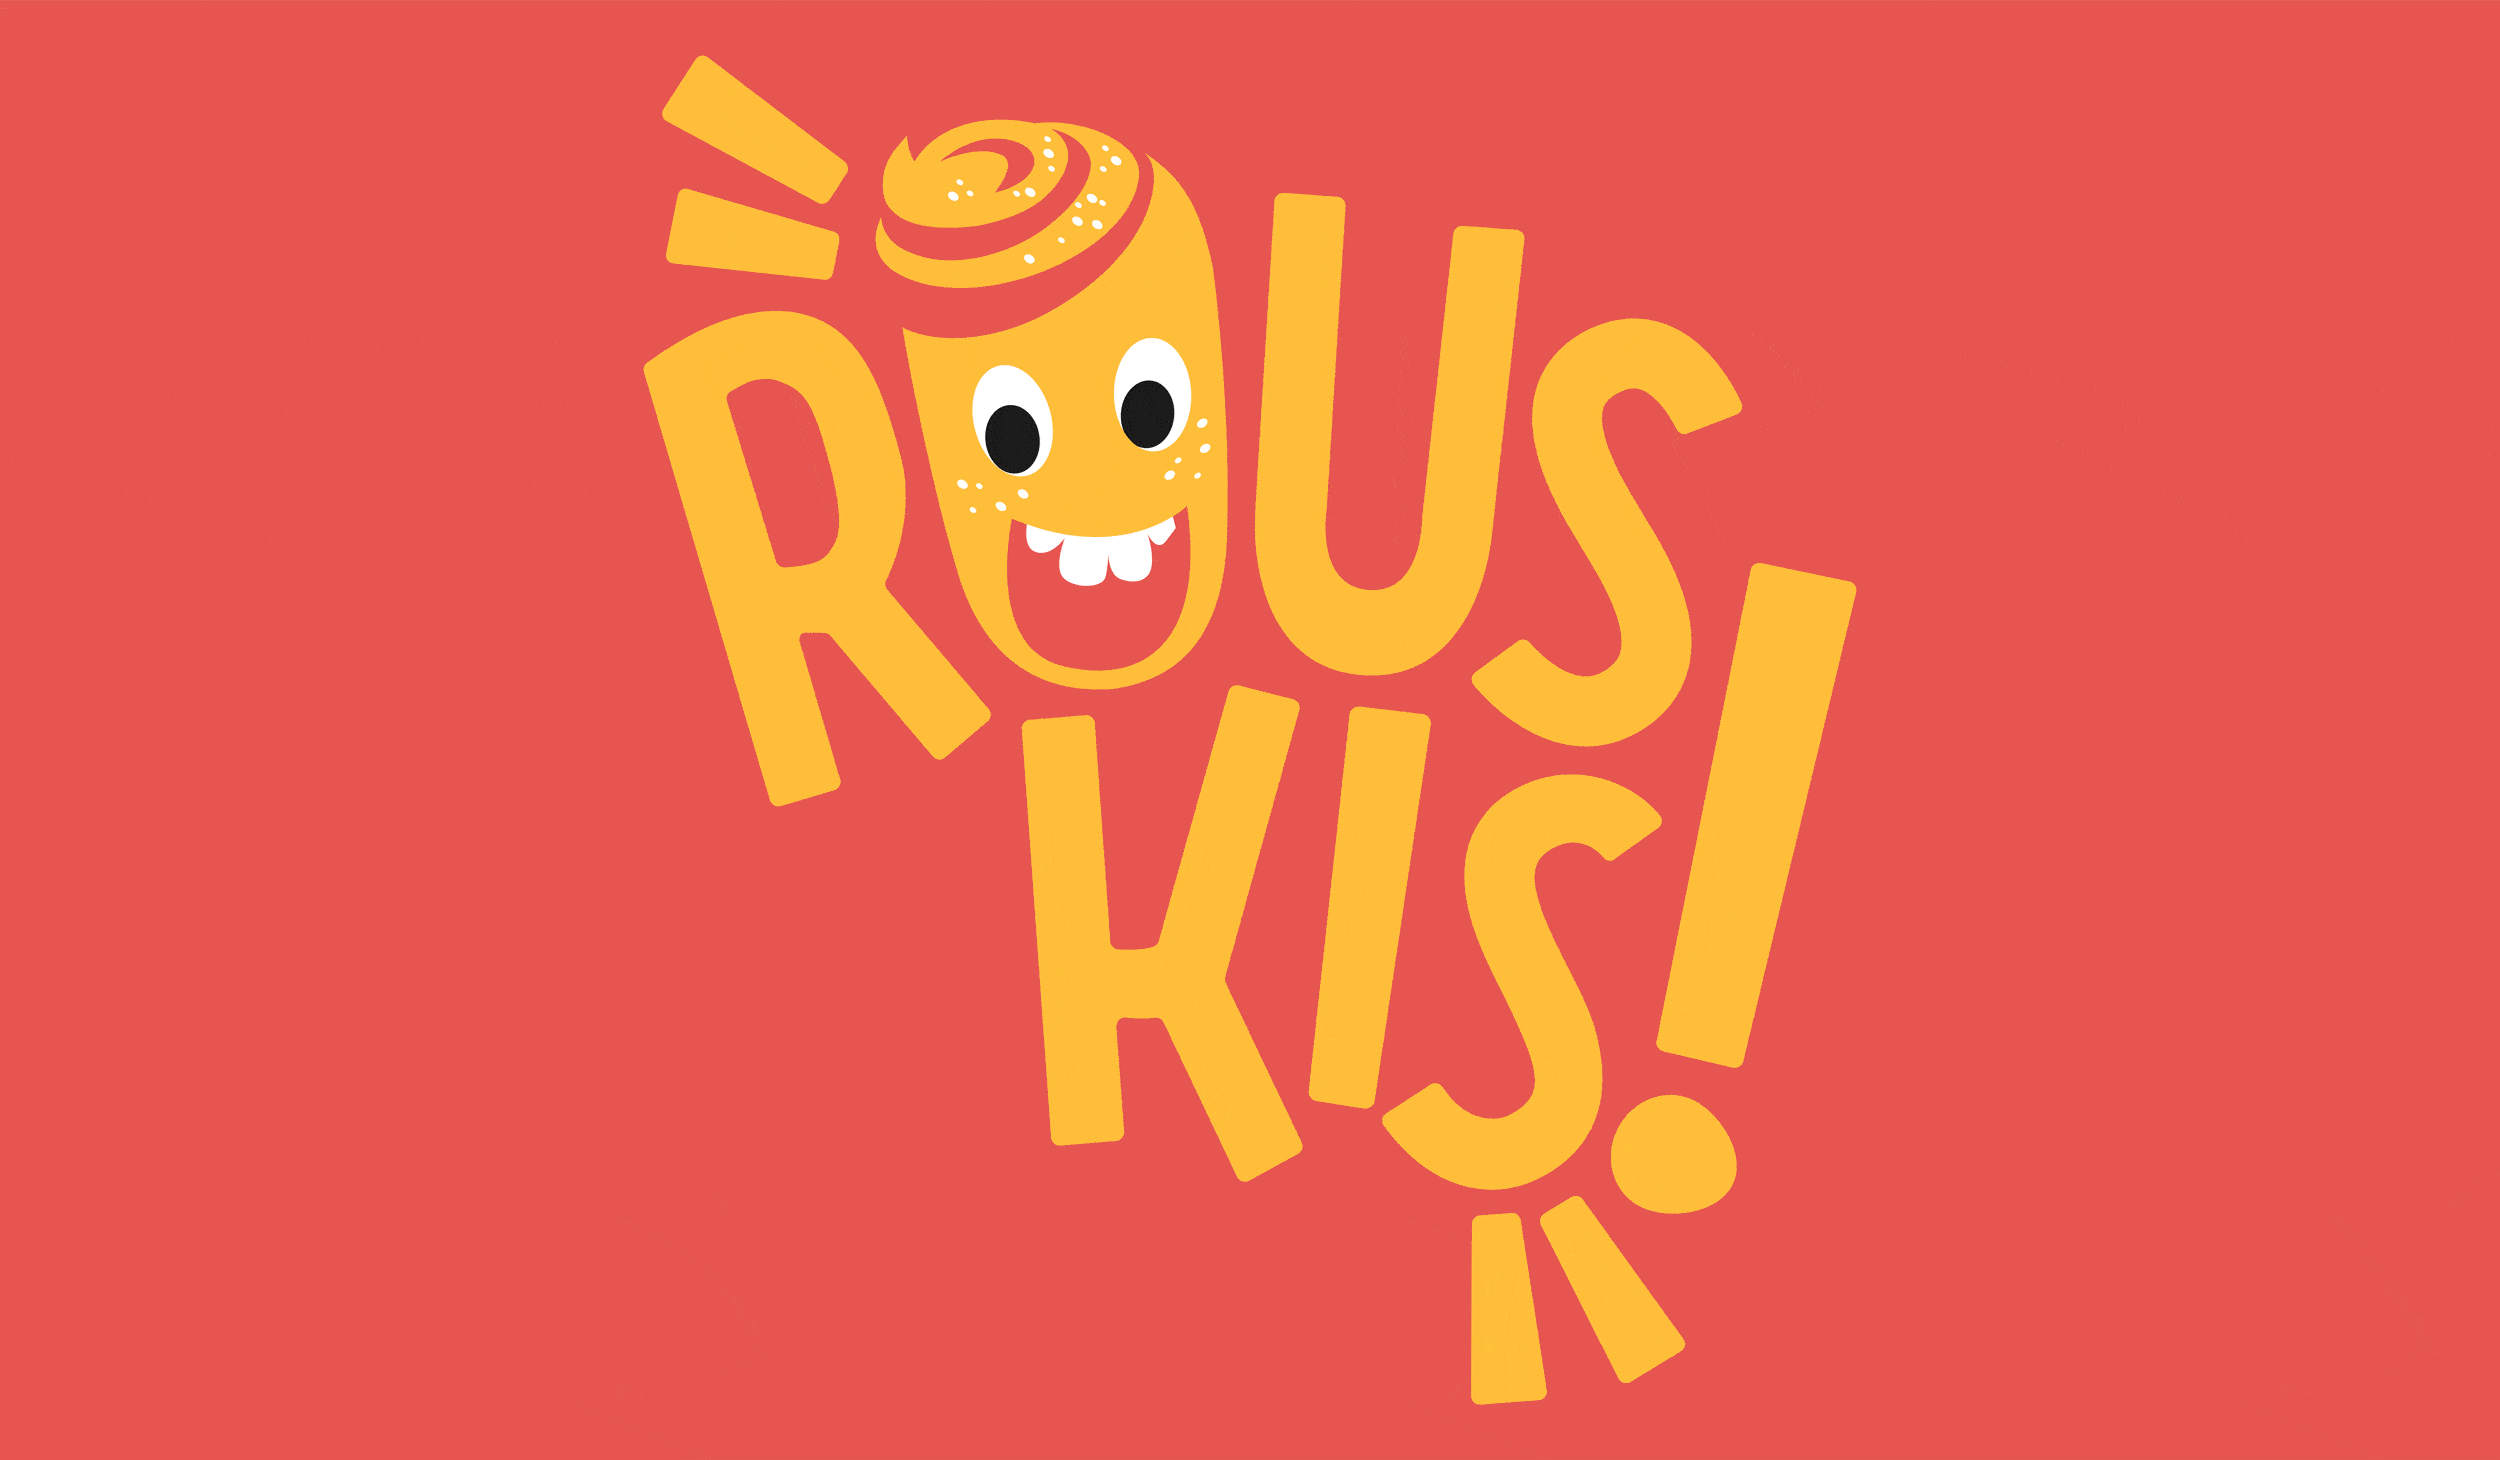 Rouskis! branding